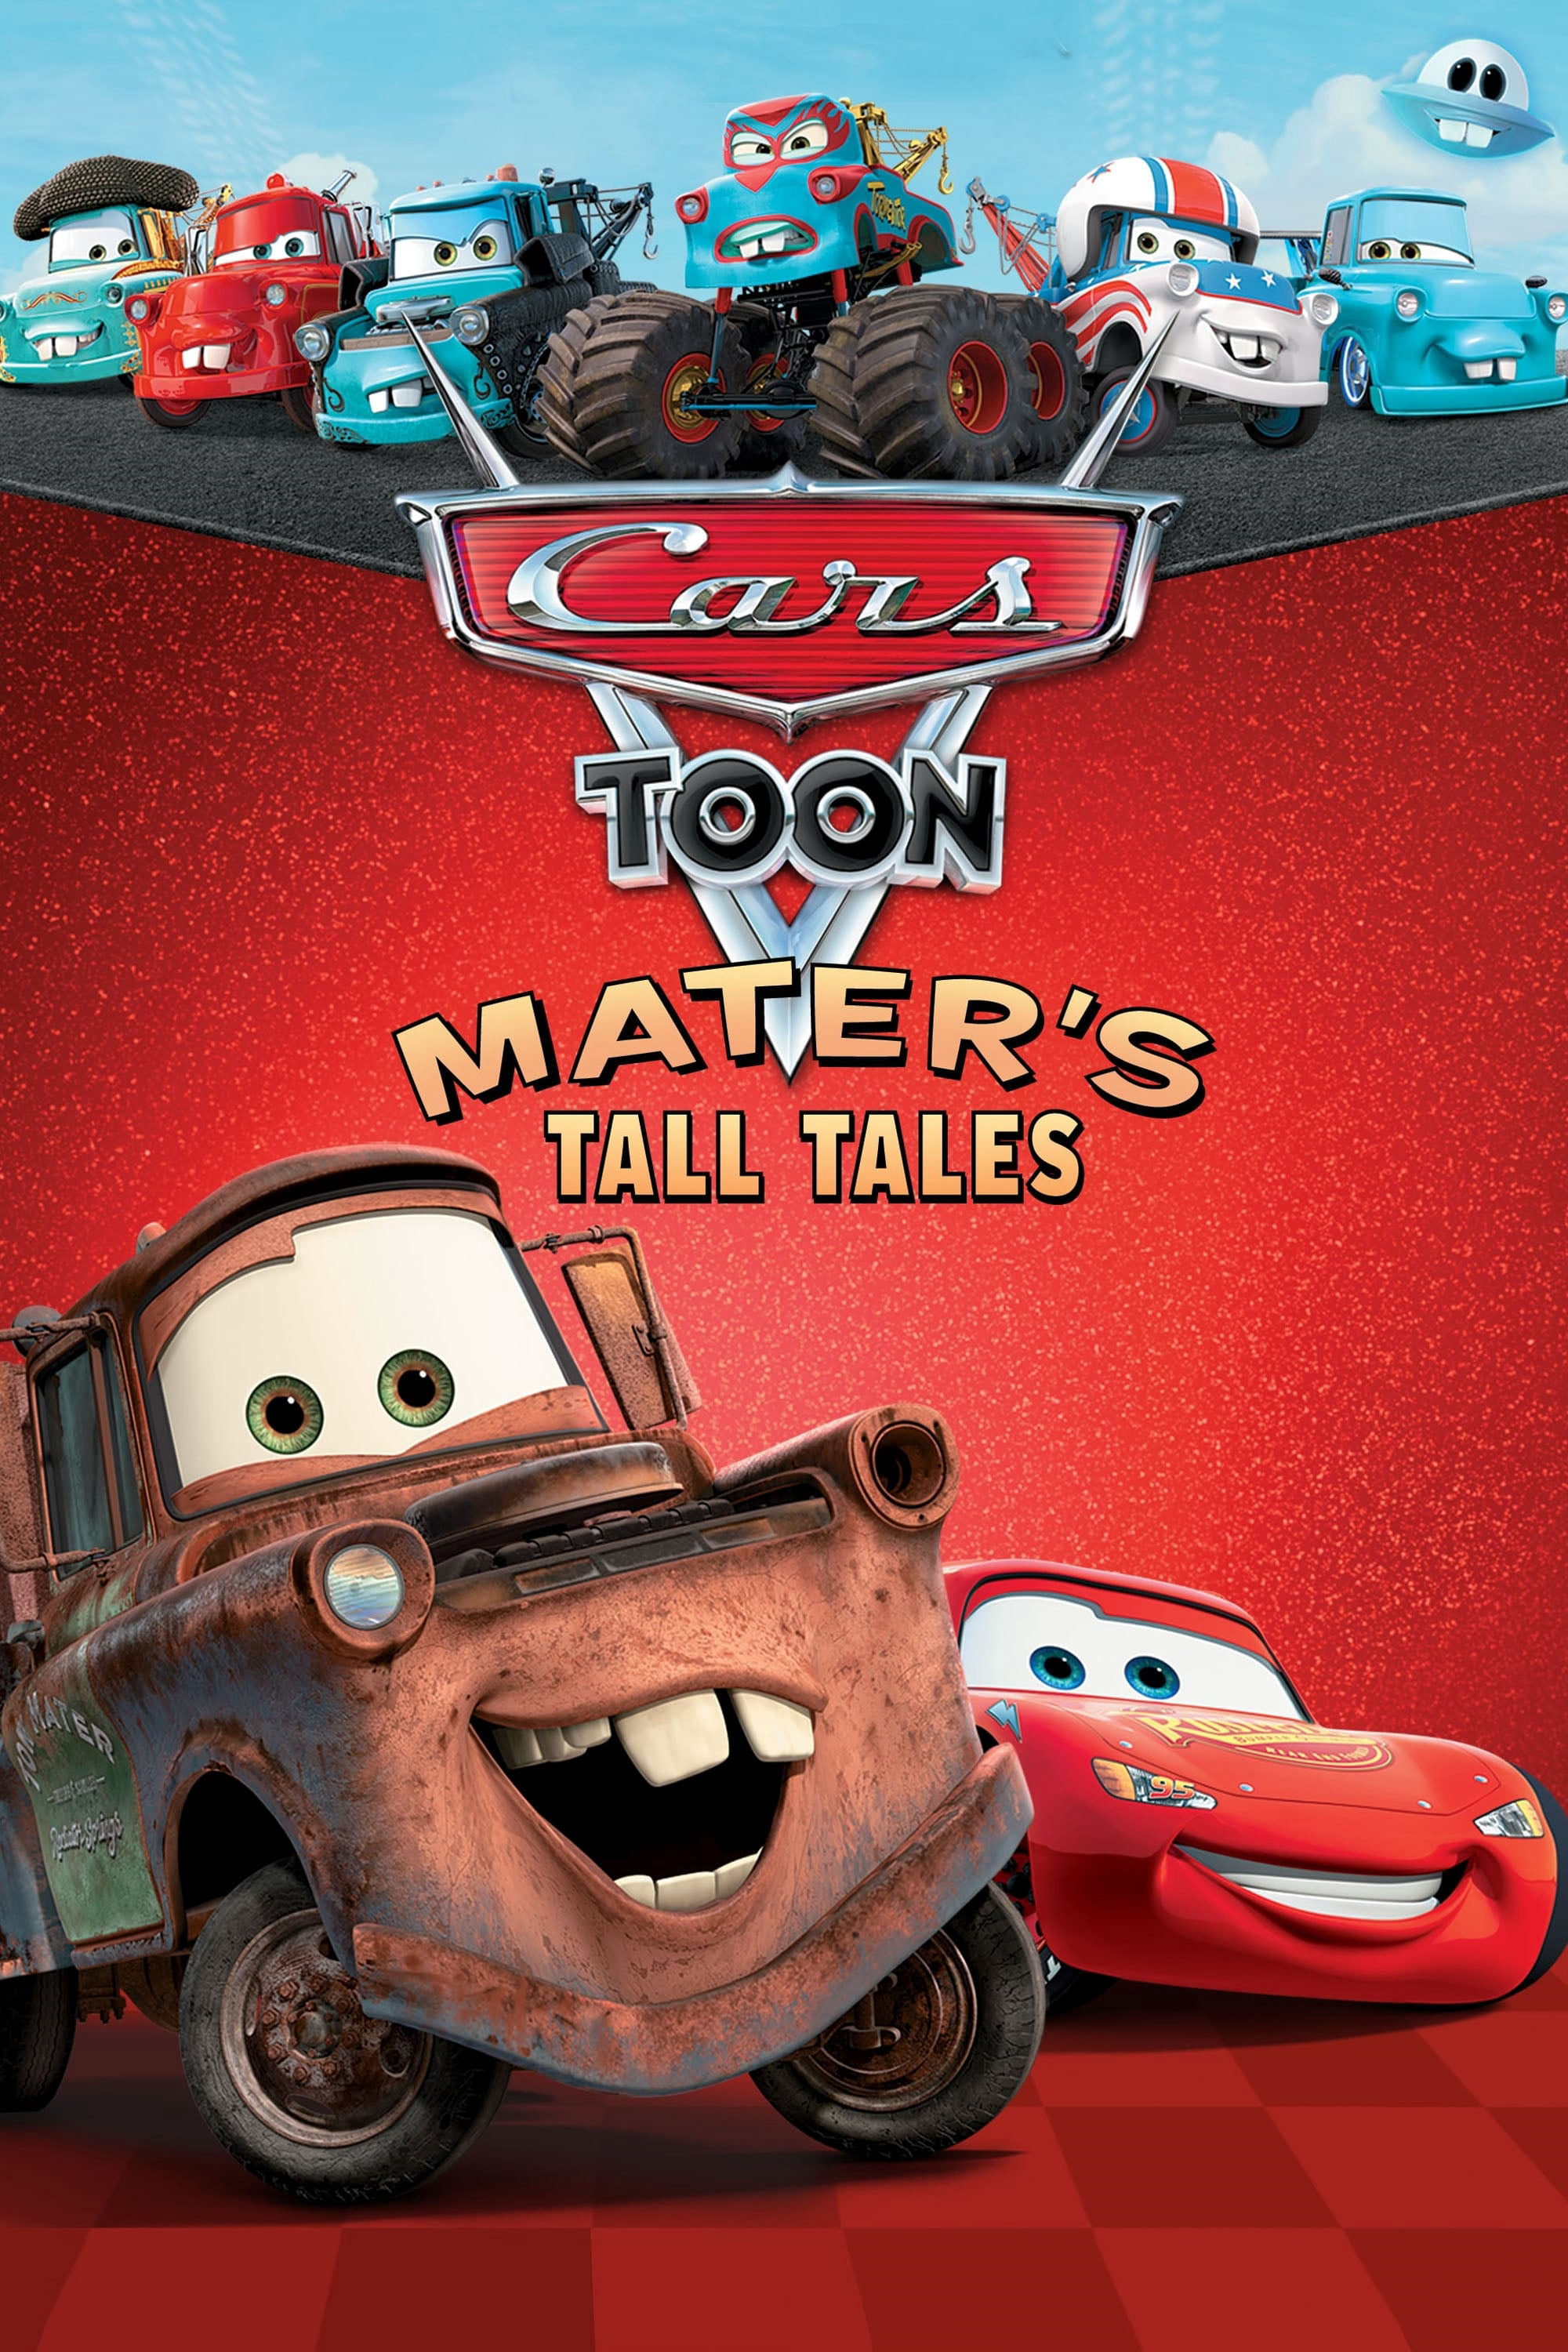 Vương Quốc Xe Hơi: Mater Chém Gió (Cars Toon Mater's Tall Tales) [2008]